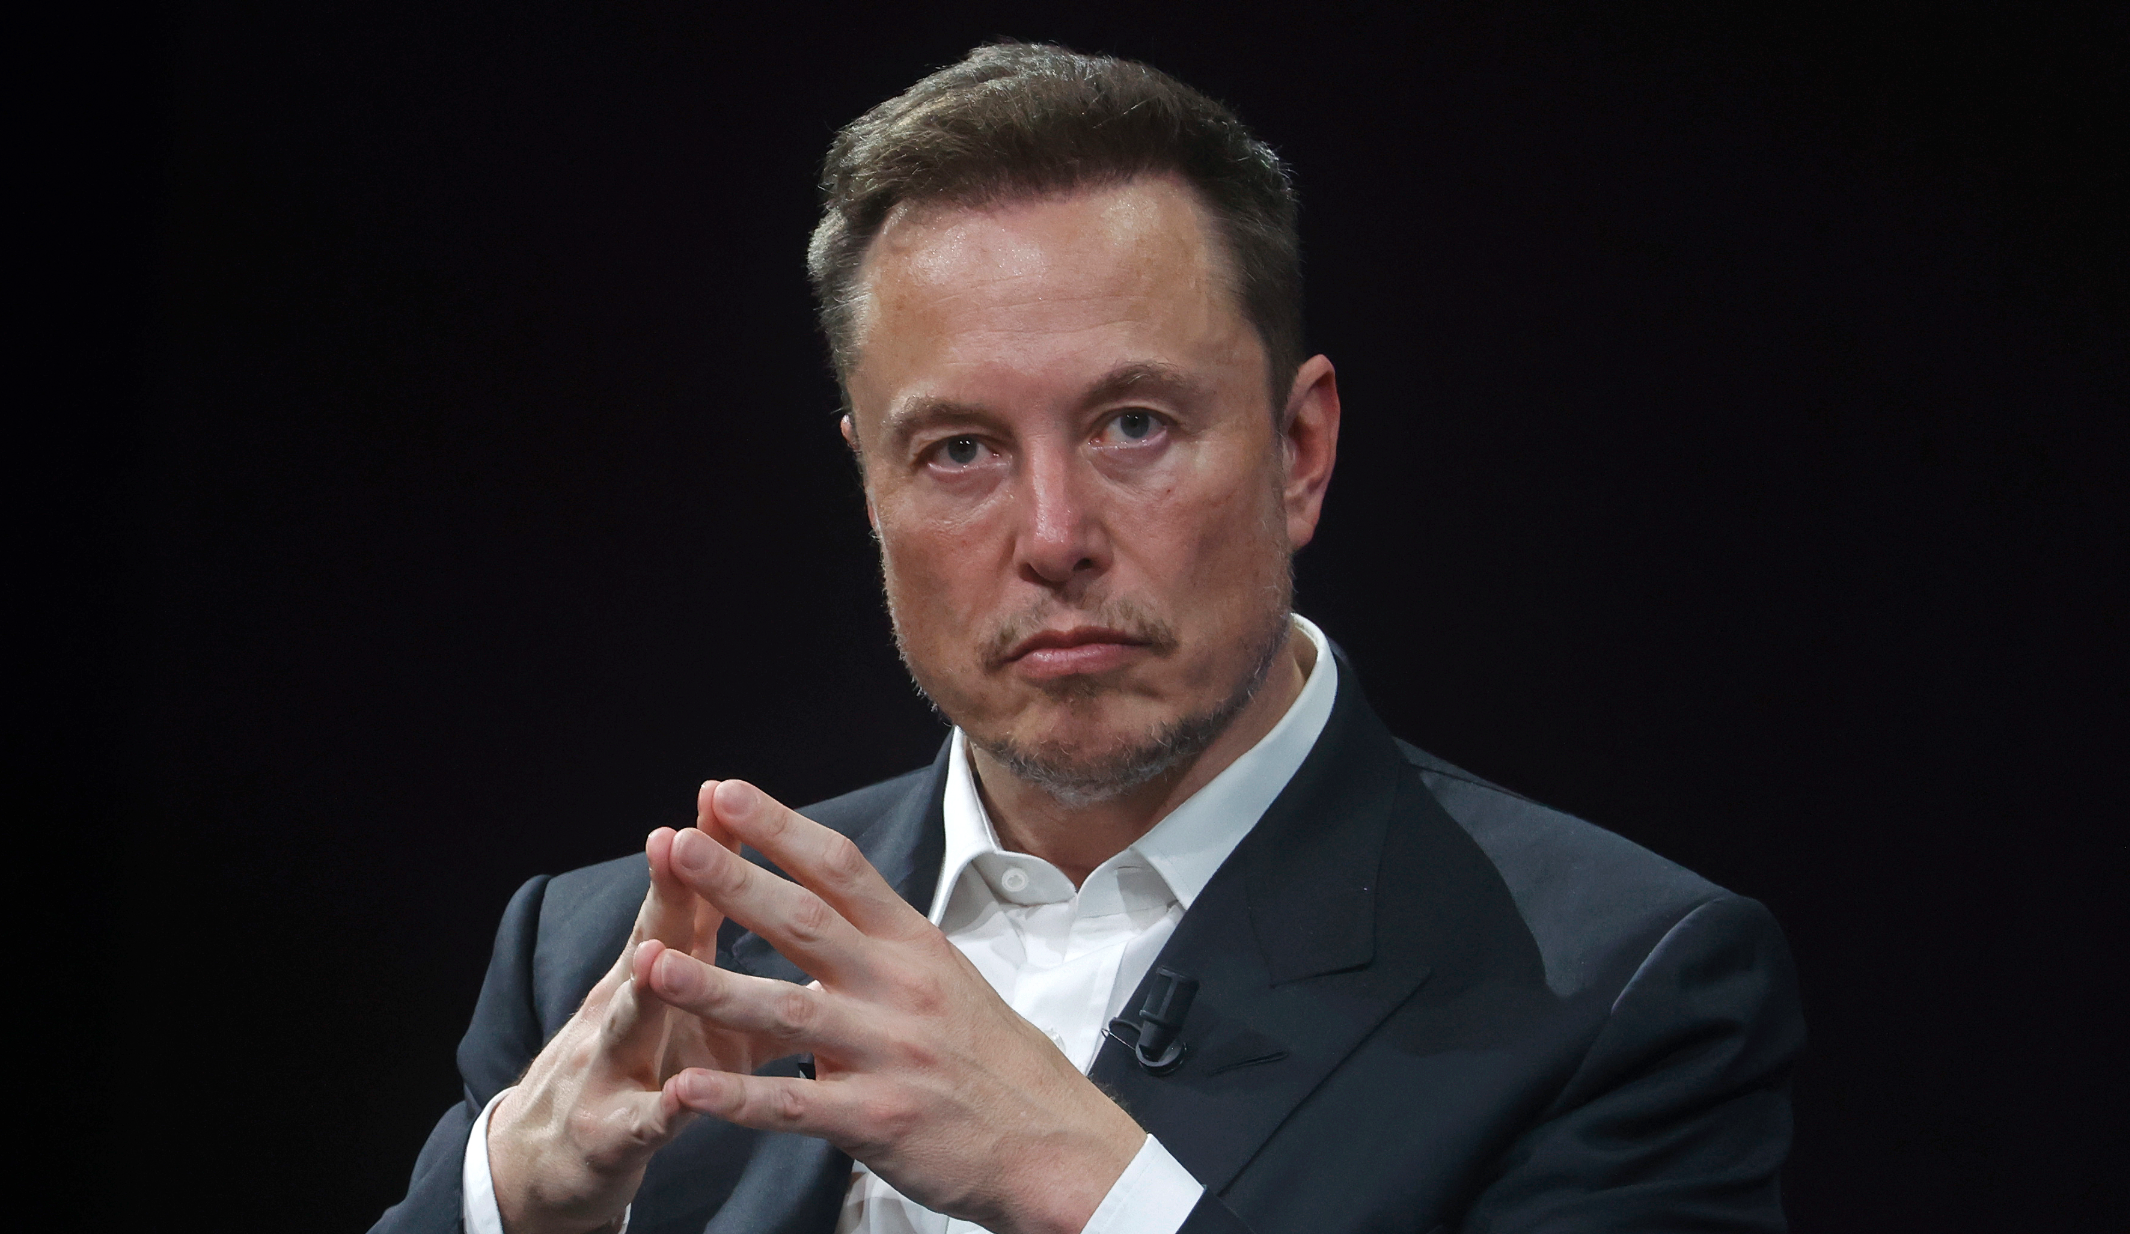 Elon Musk sues to avoid testifying in SEC Twitter probe